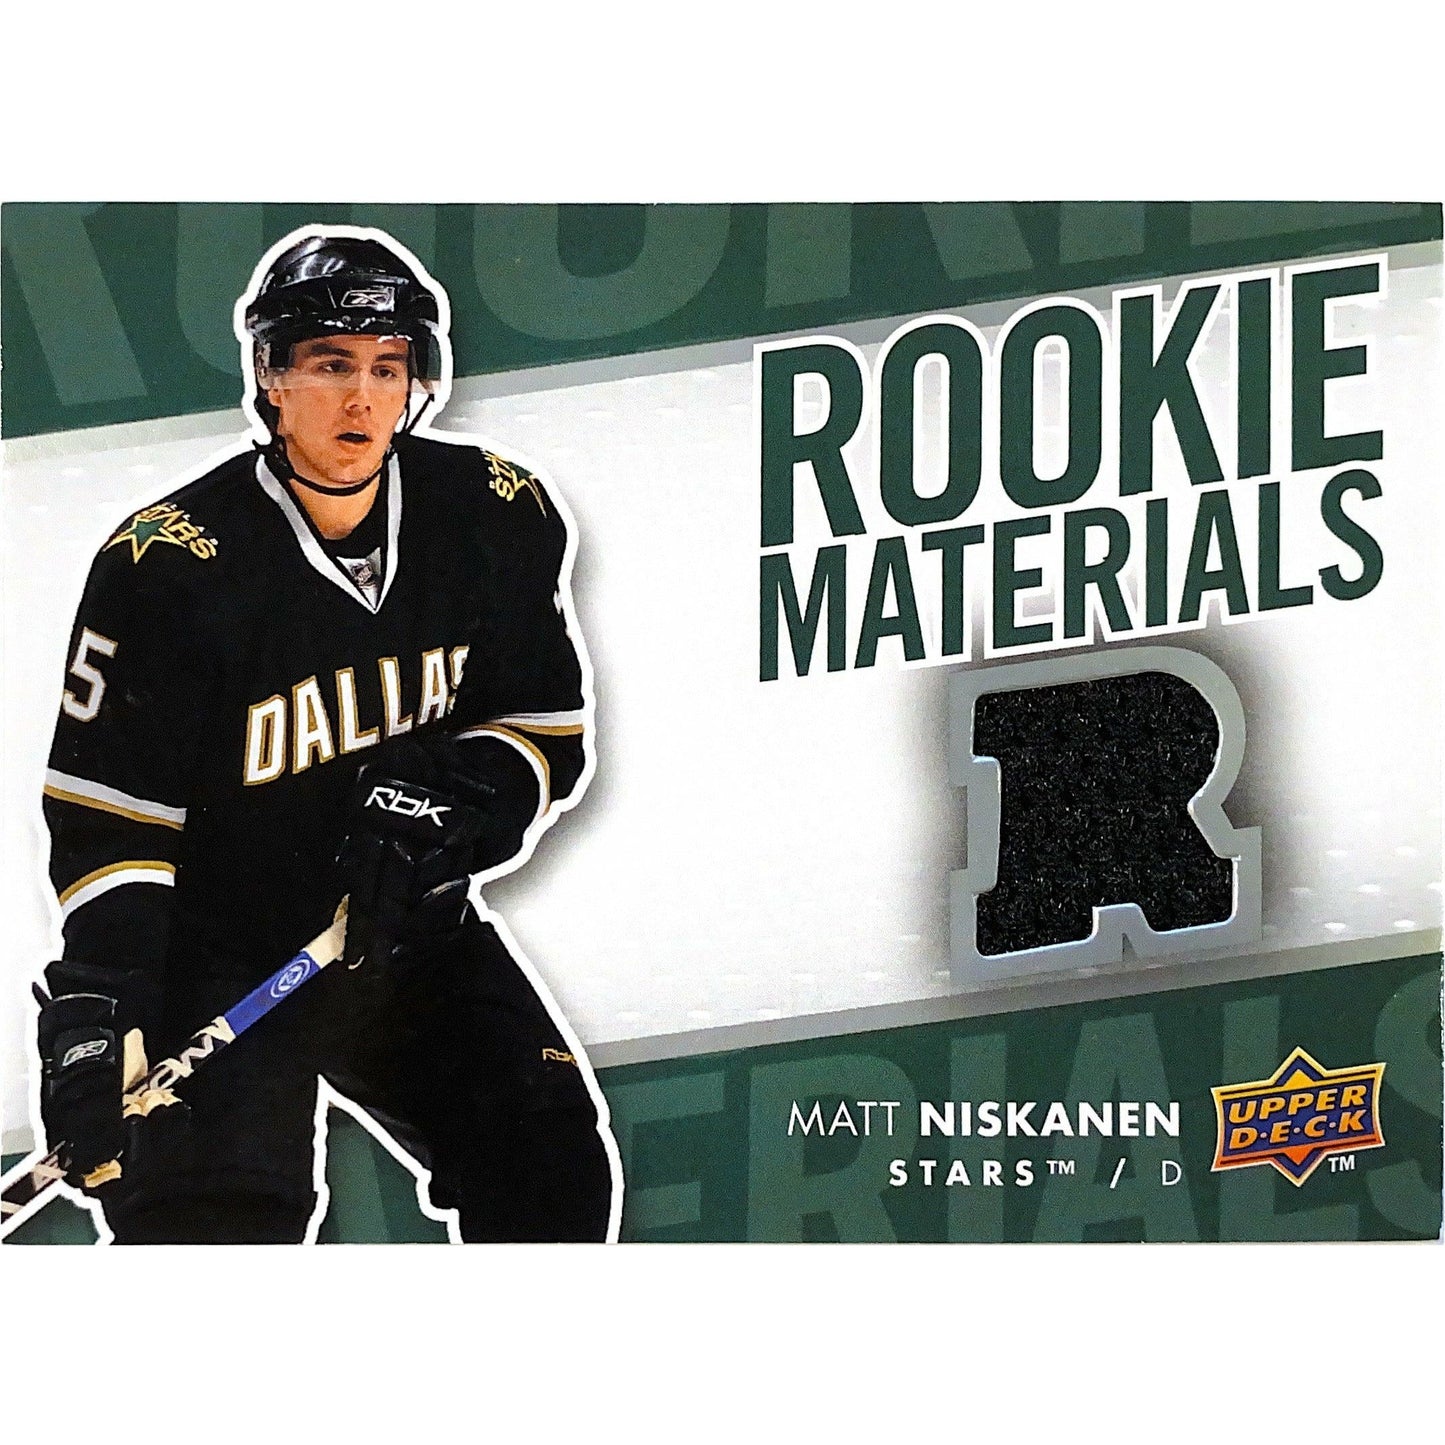 2007-08 Upper Deck Series 2 Matt Niskanen Rookie Materials